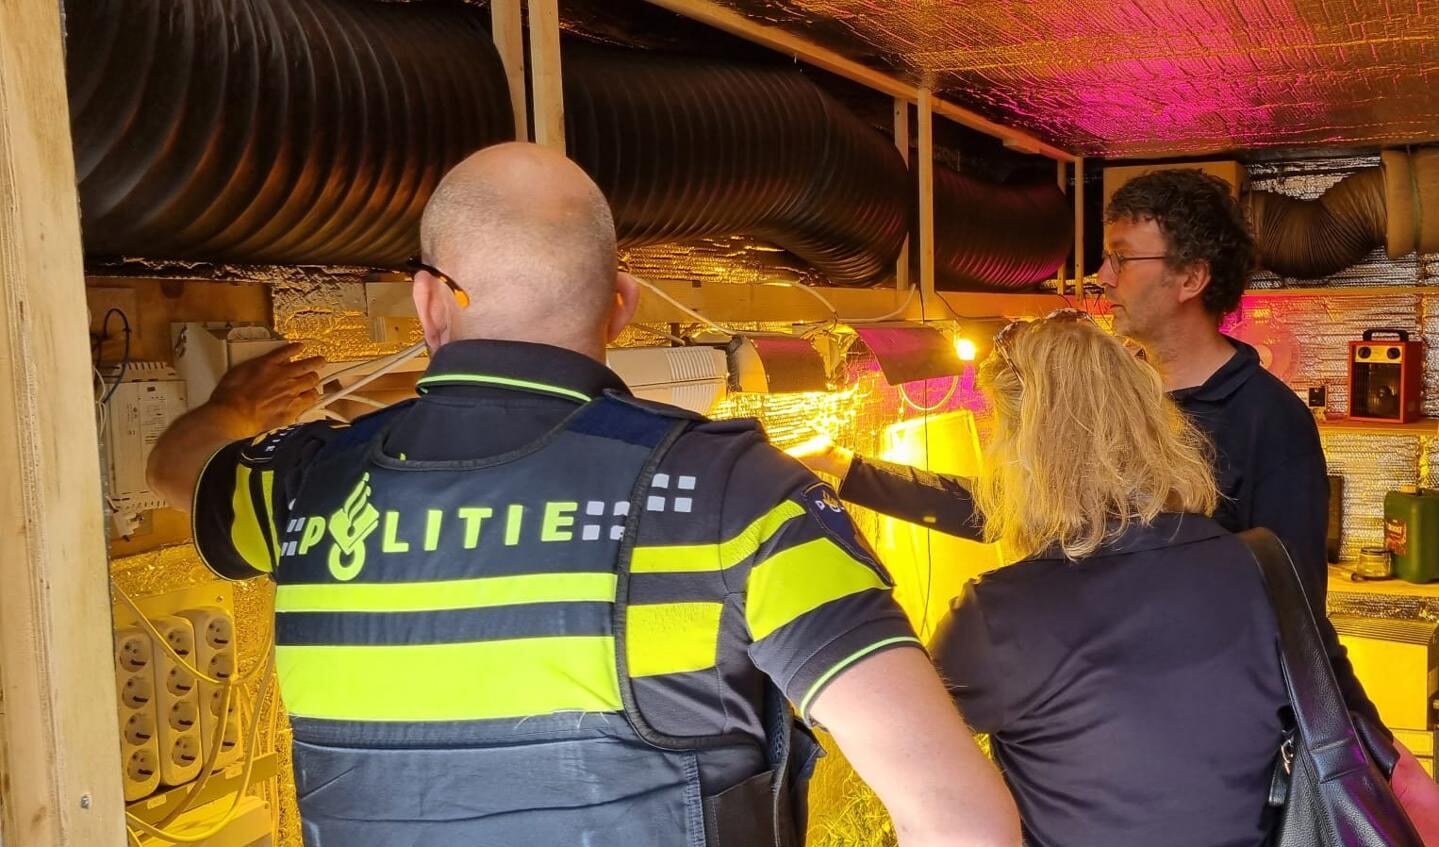 Hennepcontainer media lab tijdens de veiligheidsmarkt in de Gildenwijk in mei 2022 